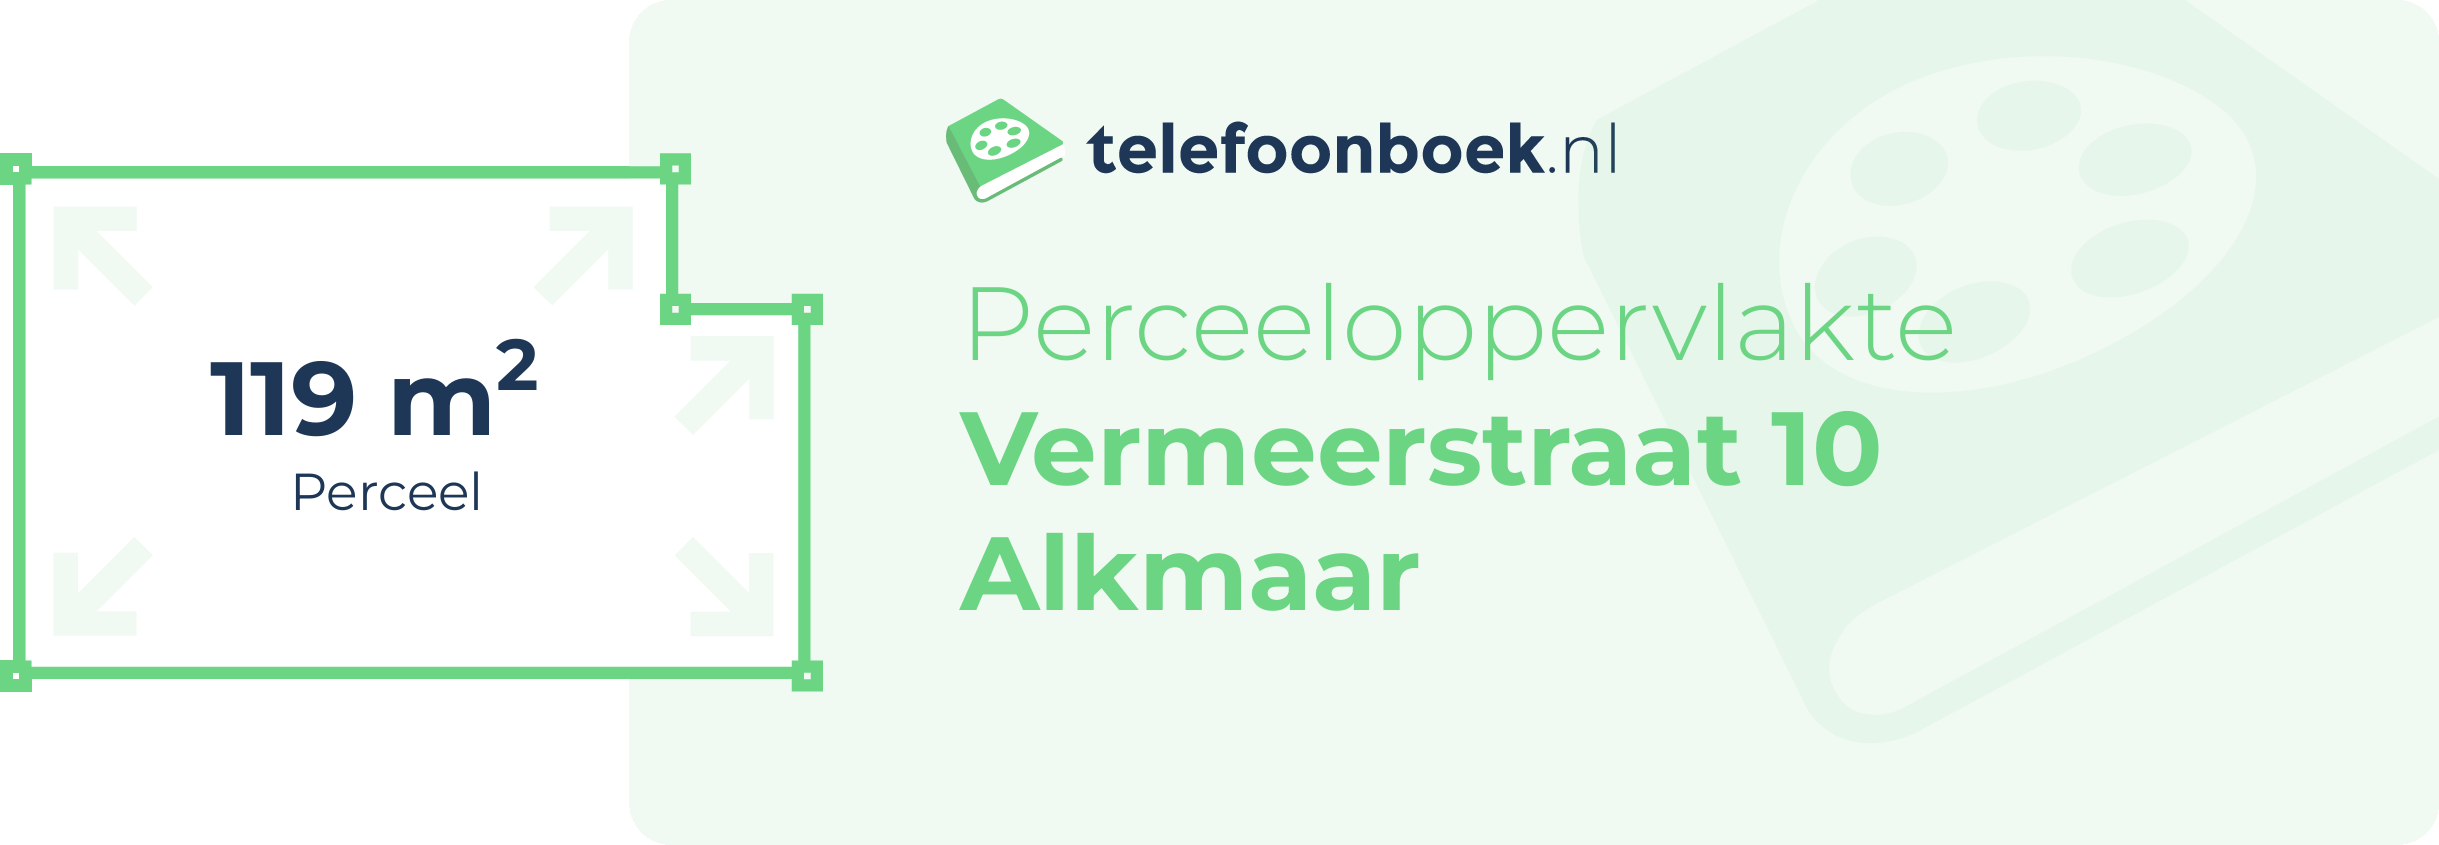 Perceeloppervlakte Vermeerstraat 10 Alkmaar